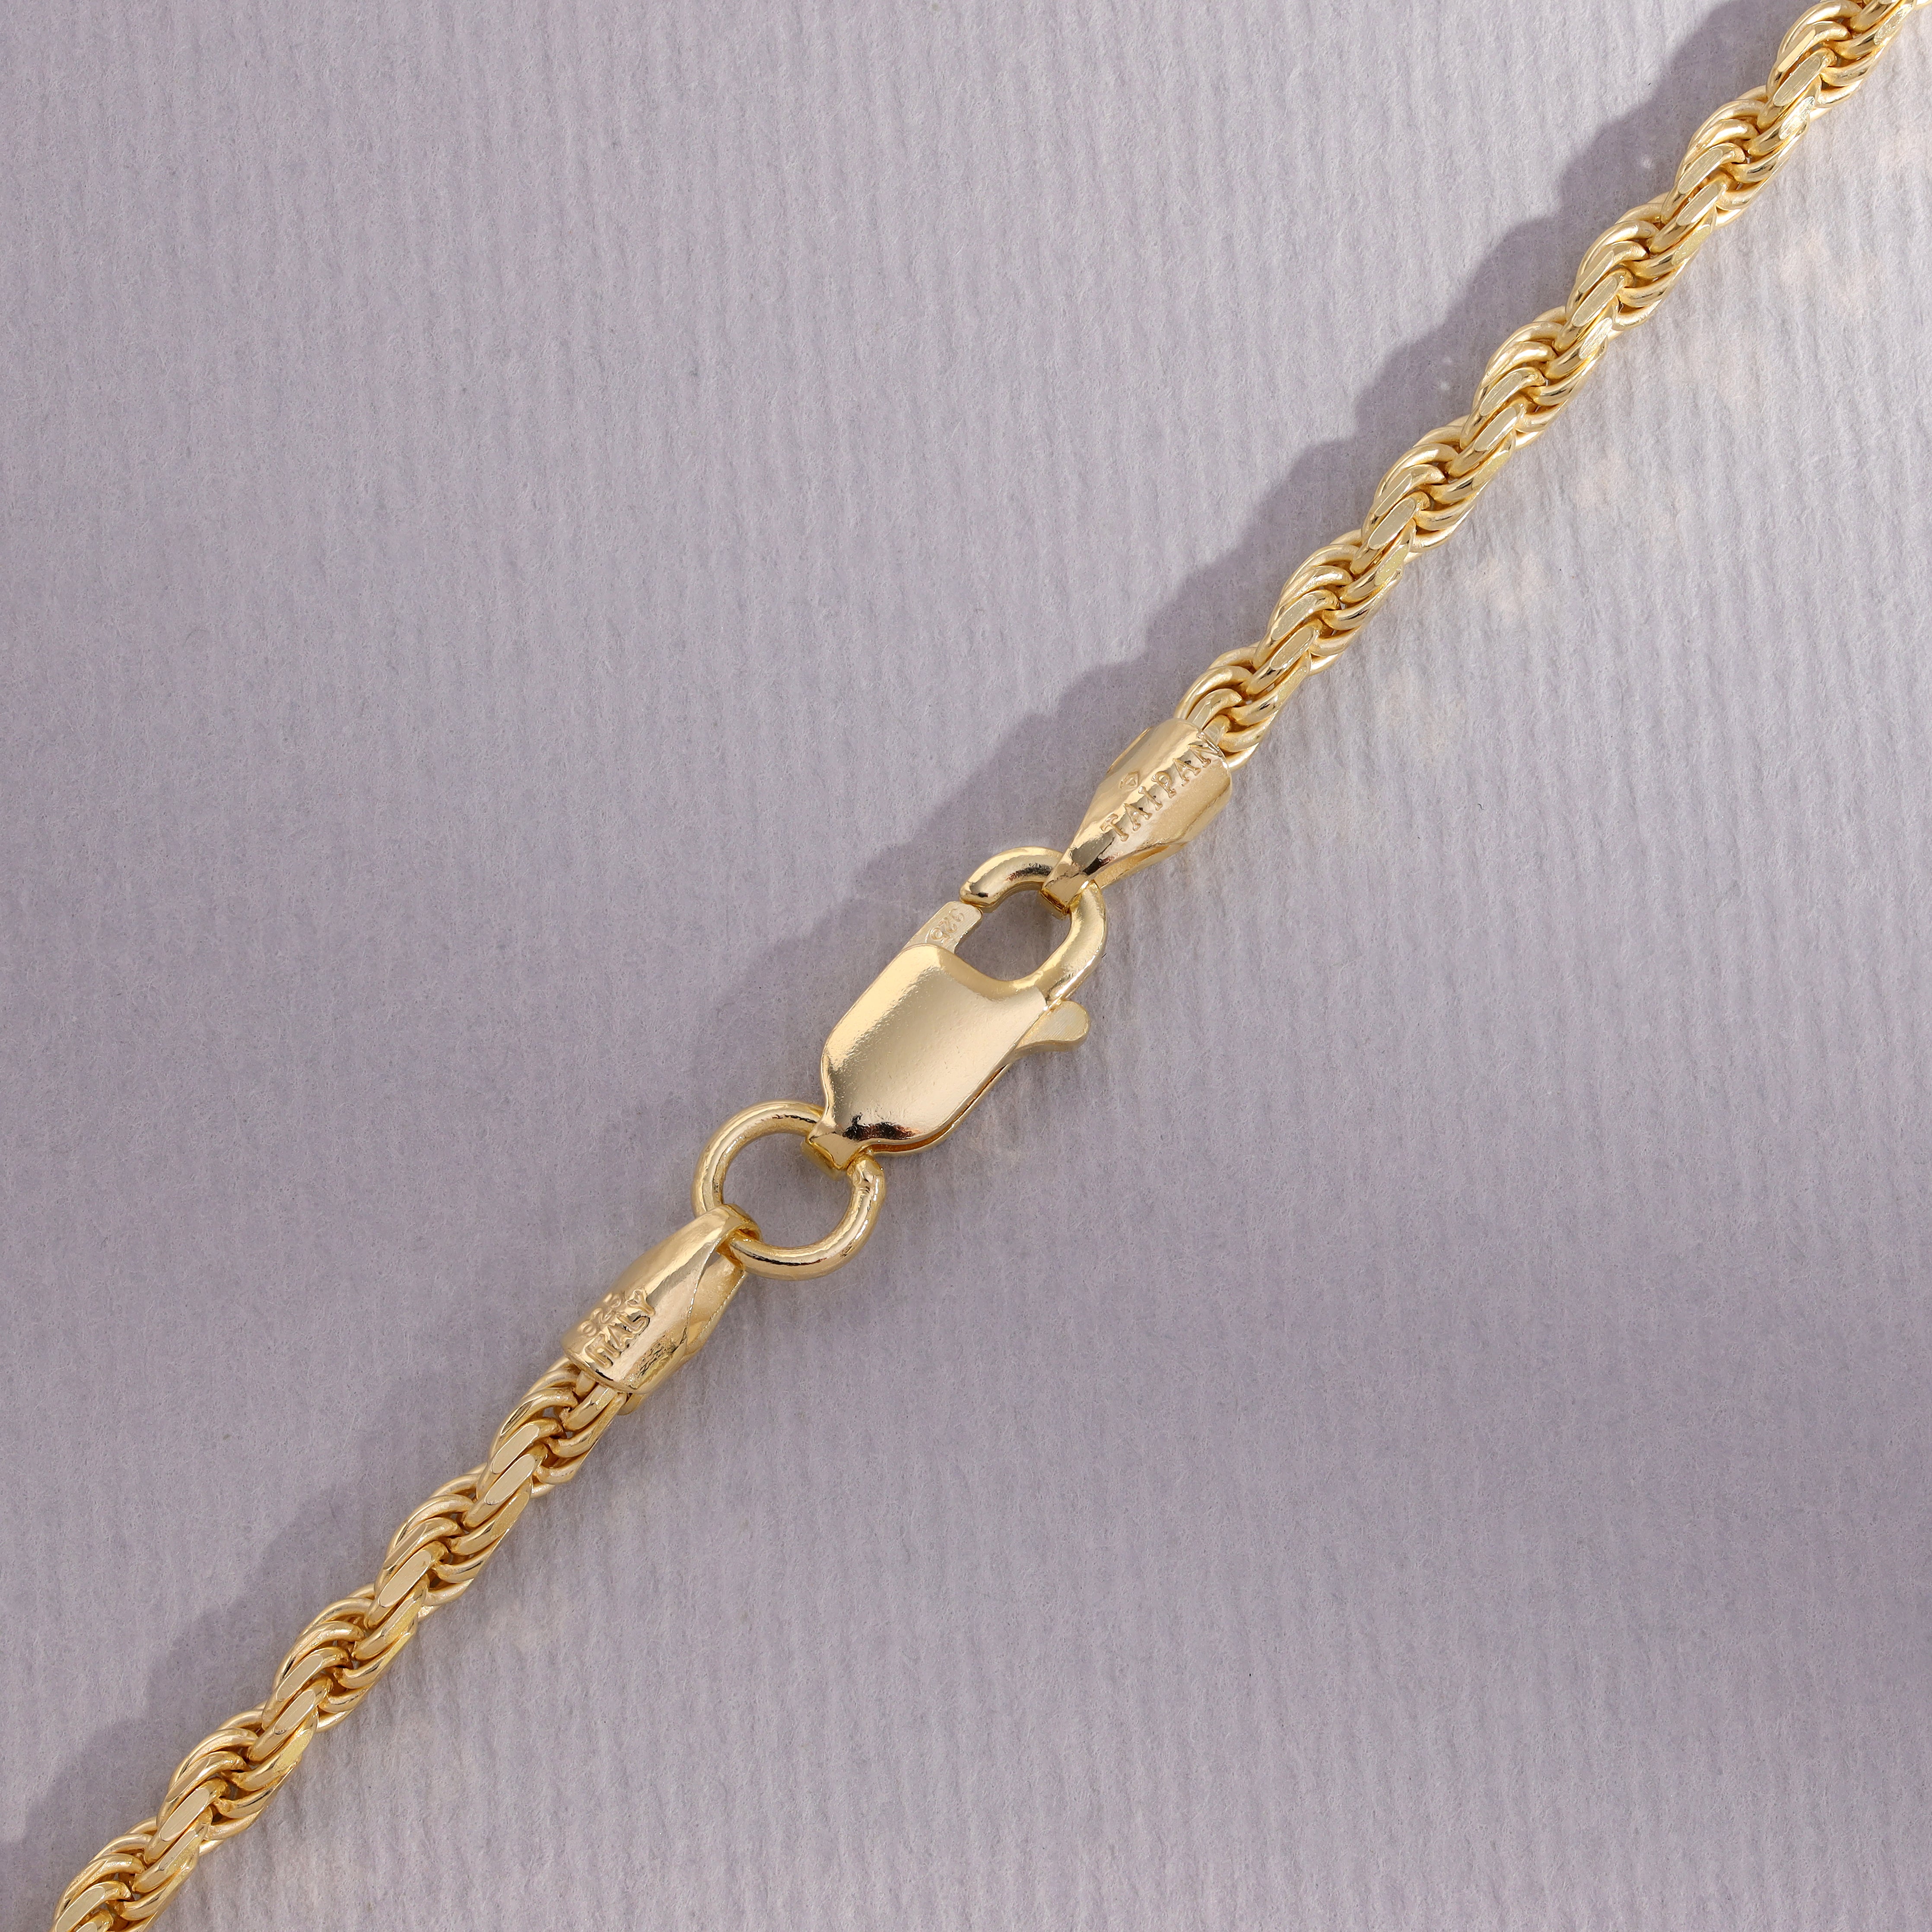 Vergoldete Kordelkette Rope Chain  2,3mm 60cm lang 925 Sterling Silber (K808) - Taipan Schmuck